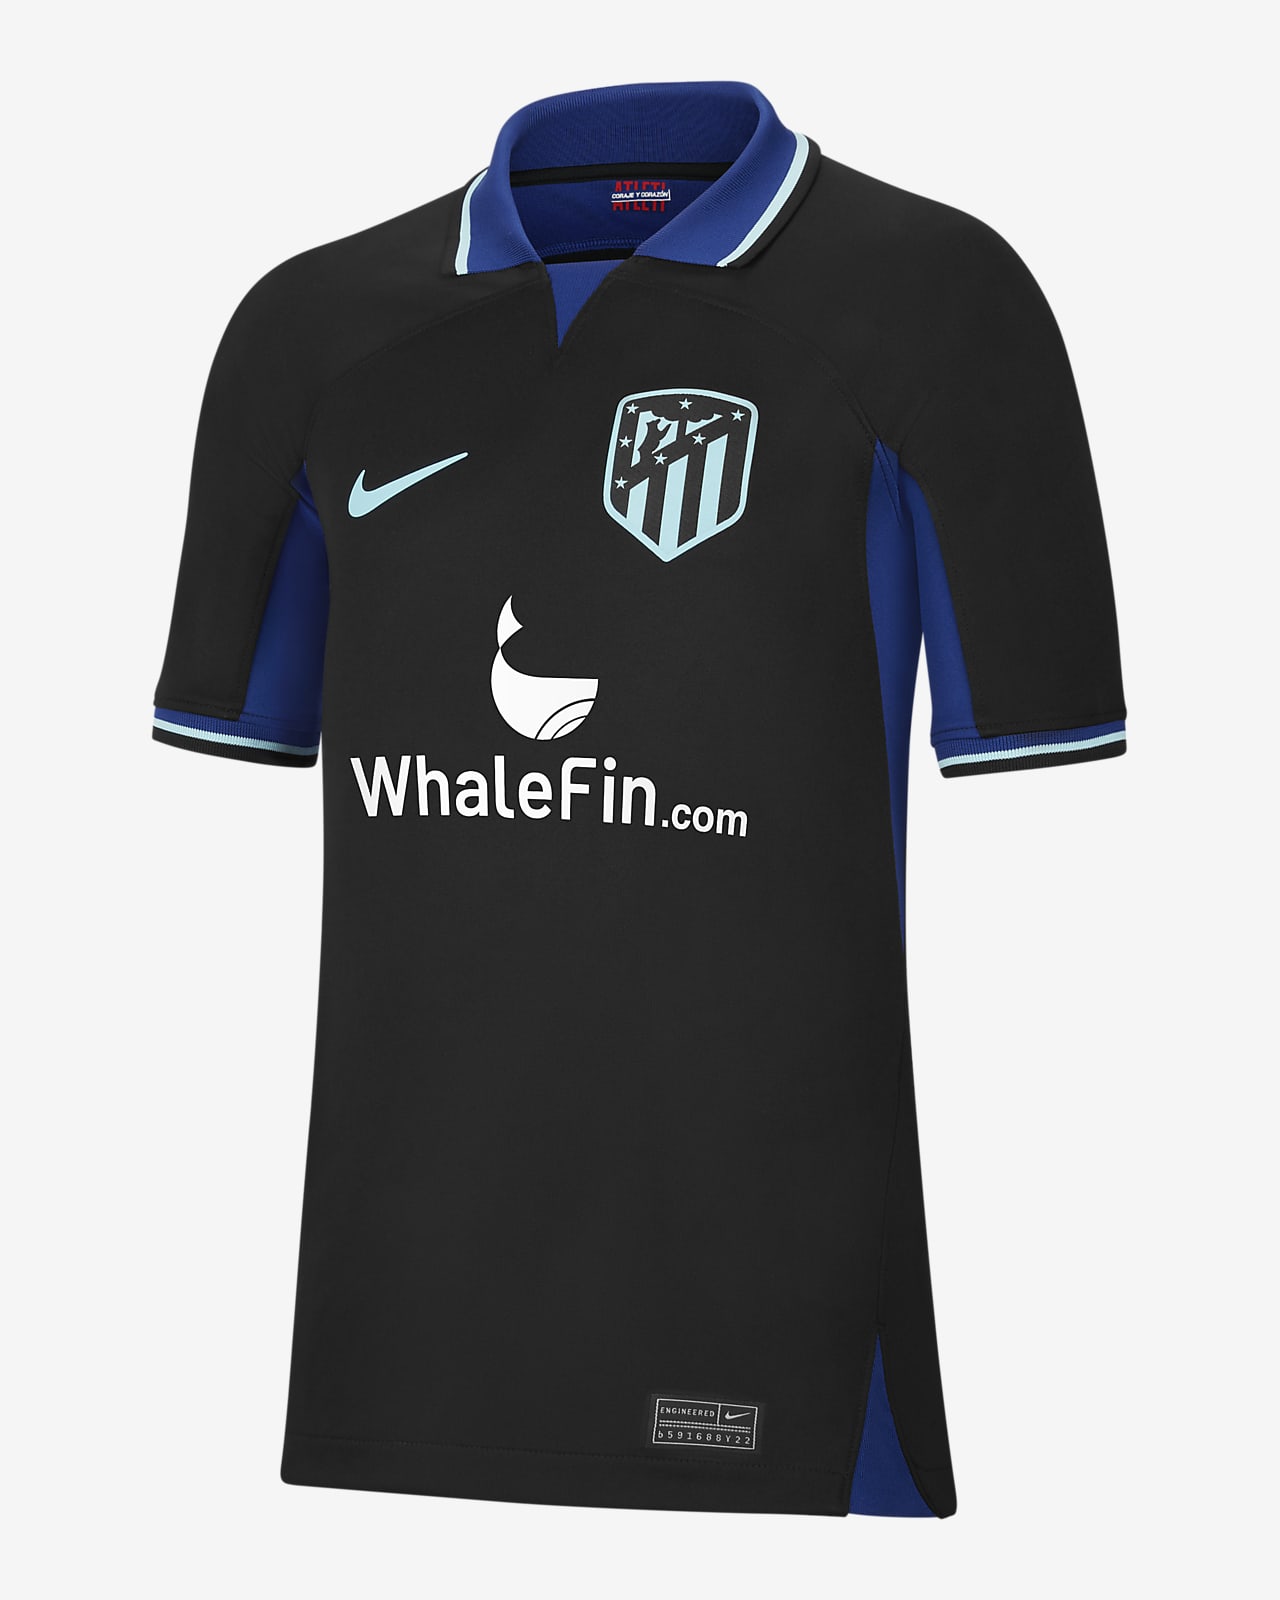 Ποδοσφαιρική φανέλα Nike Dri-FIT εκτός έδρας Ατλέτικο Μαδρίτης 2022/23 Stadium για μεγάλα παιδιά